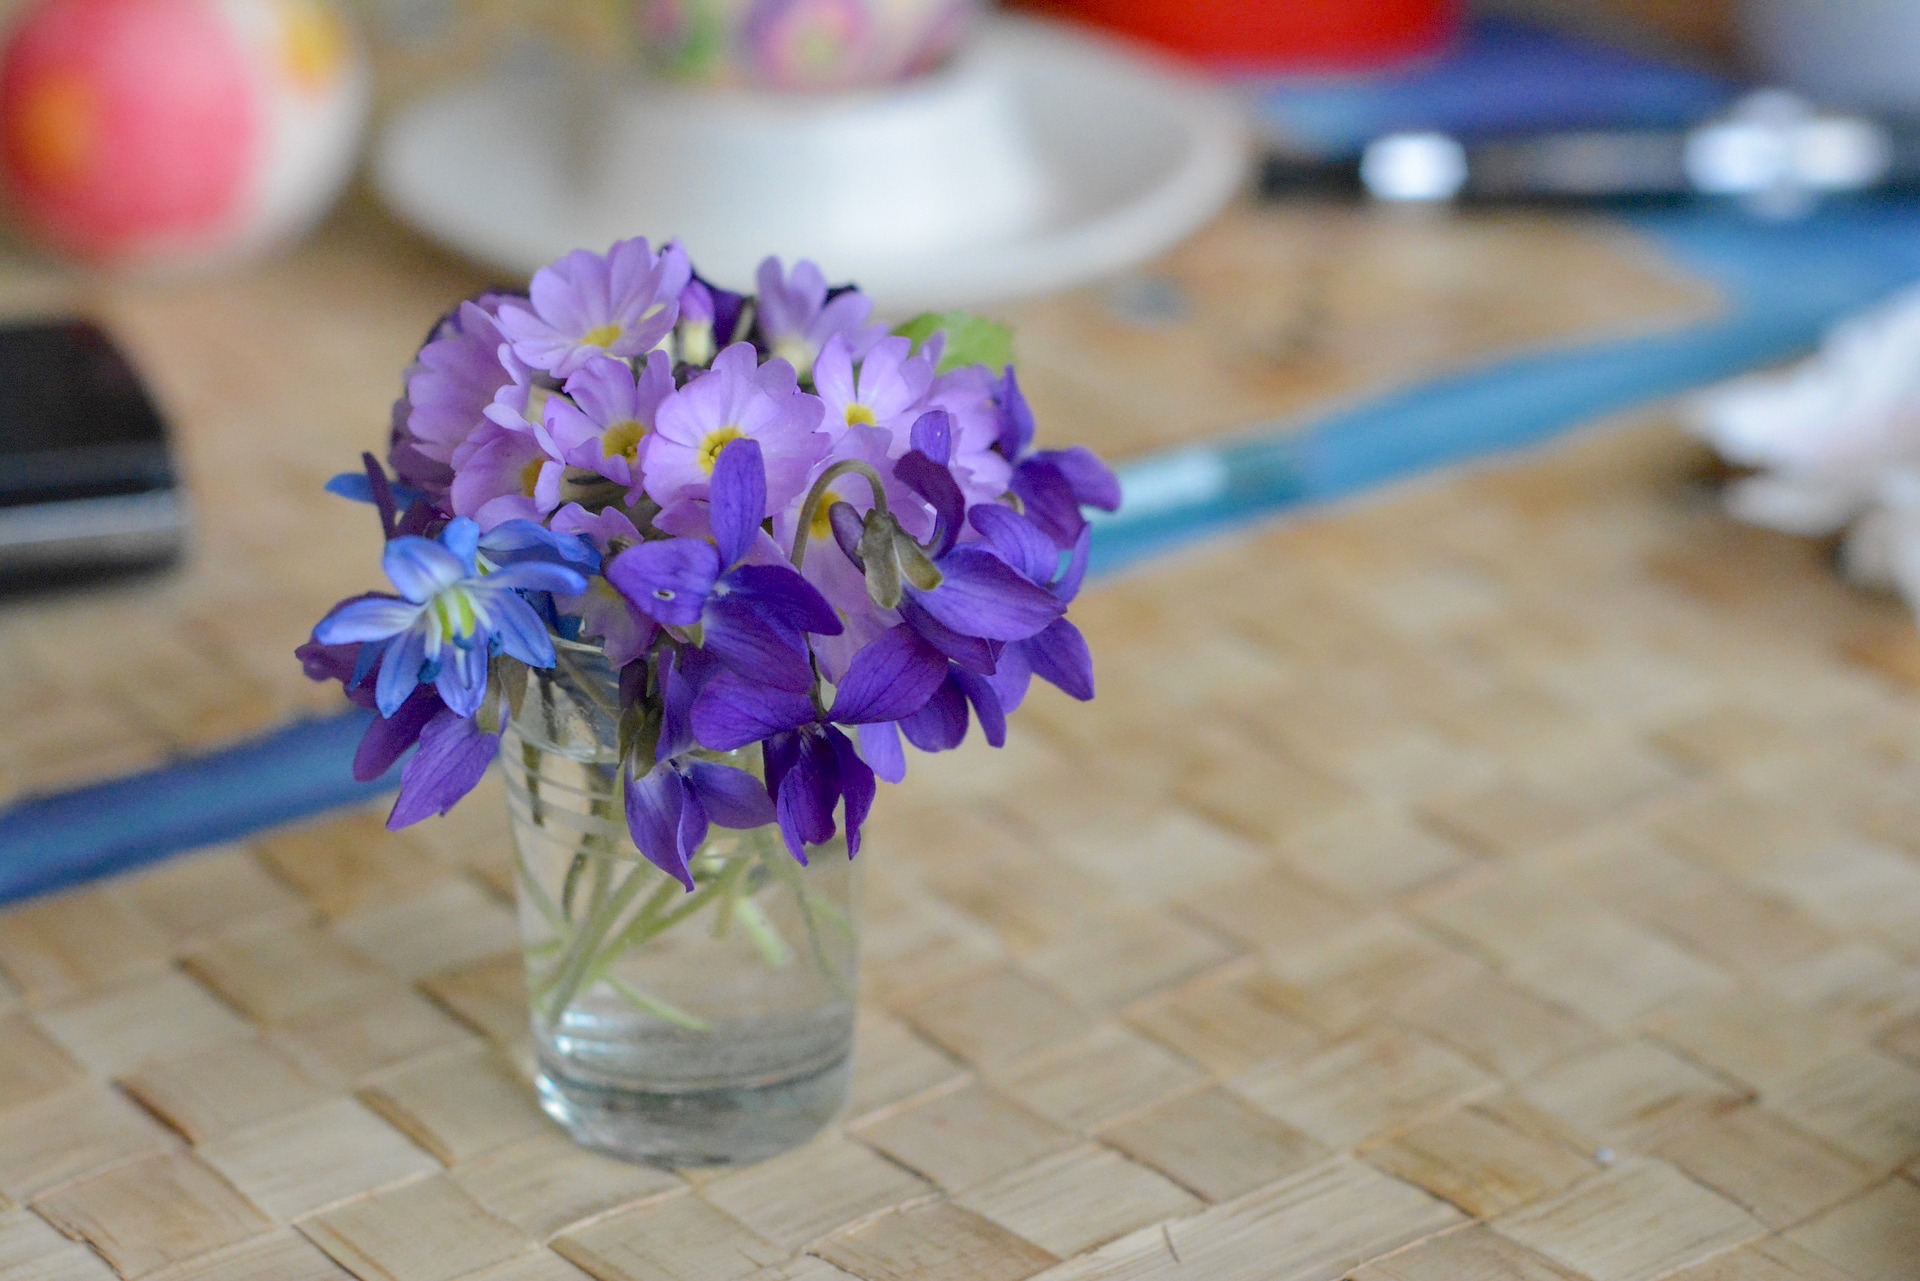 Bouquet de violettes ©utroja0 CC0 pixabay